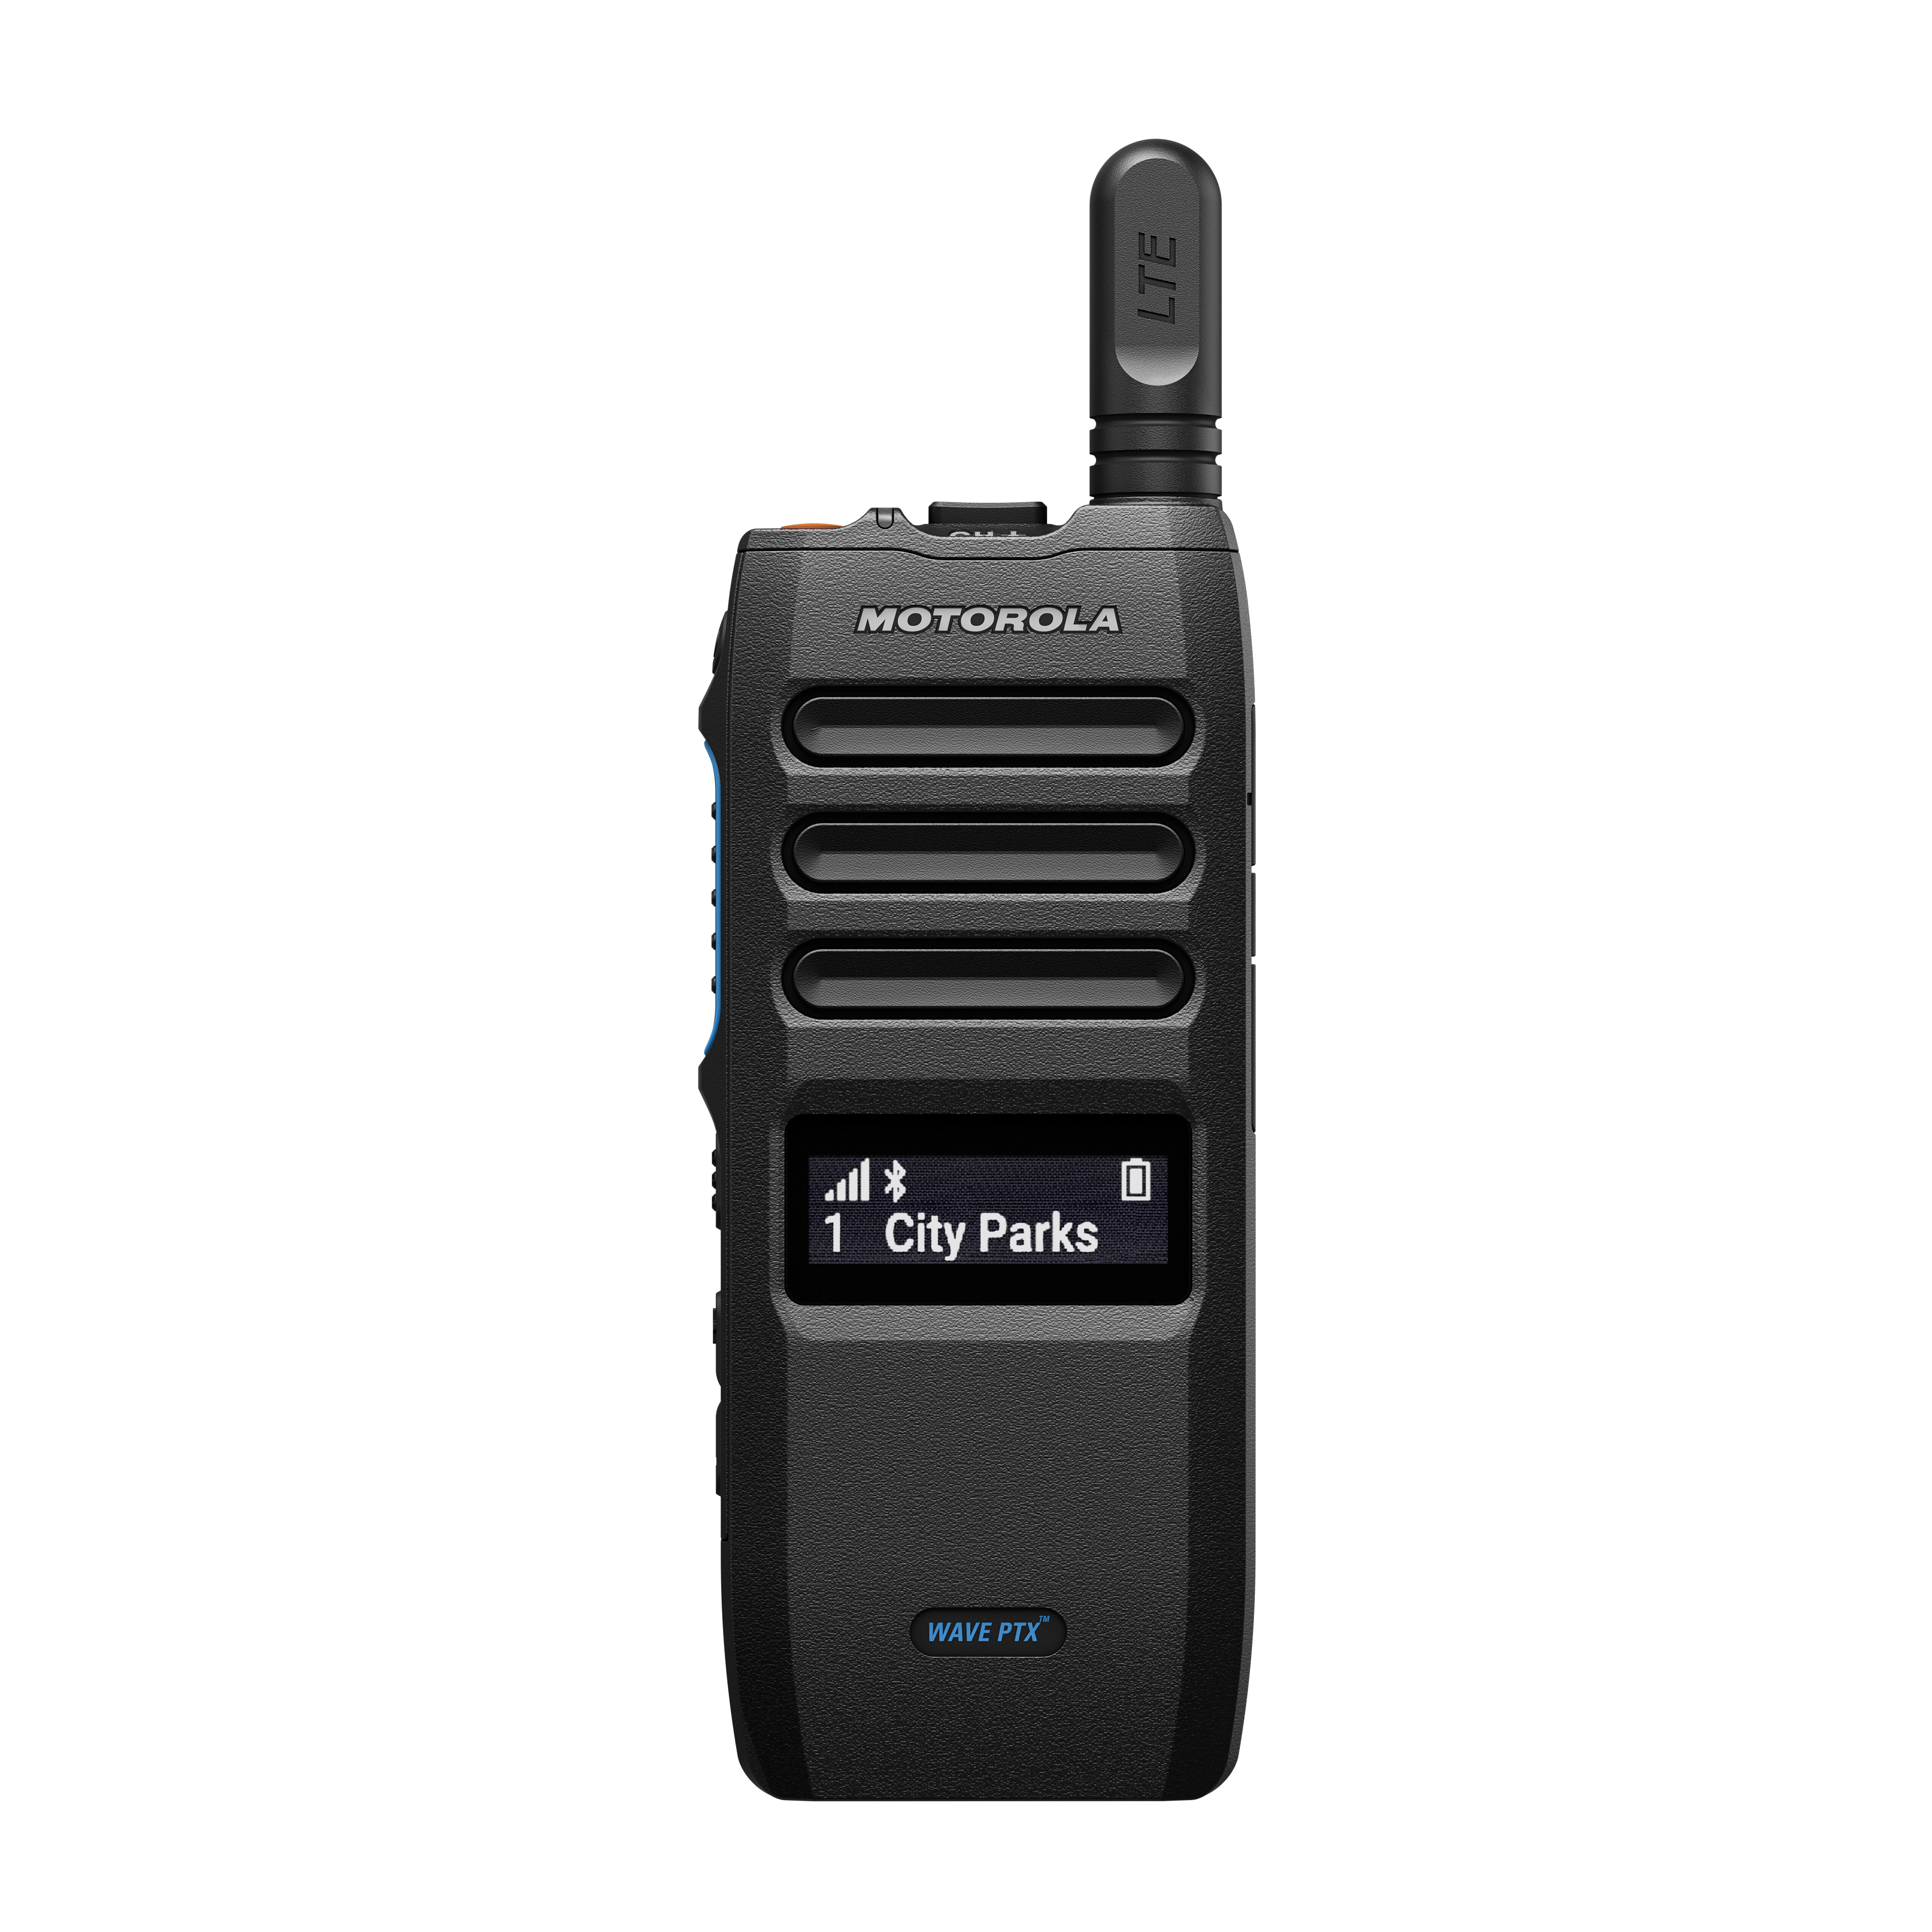 Радиостанция TLK 110 с поддержкой широкополосной связи — передний дисплей включен